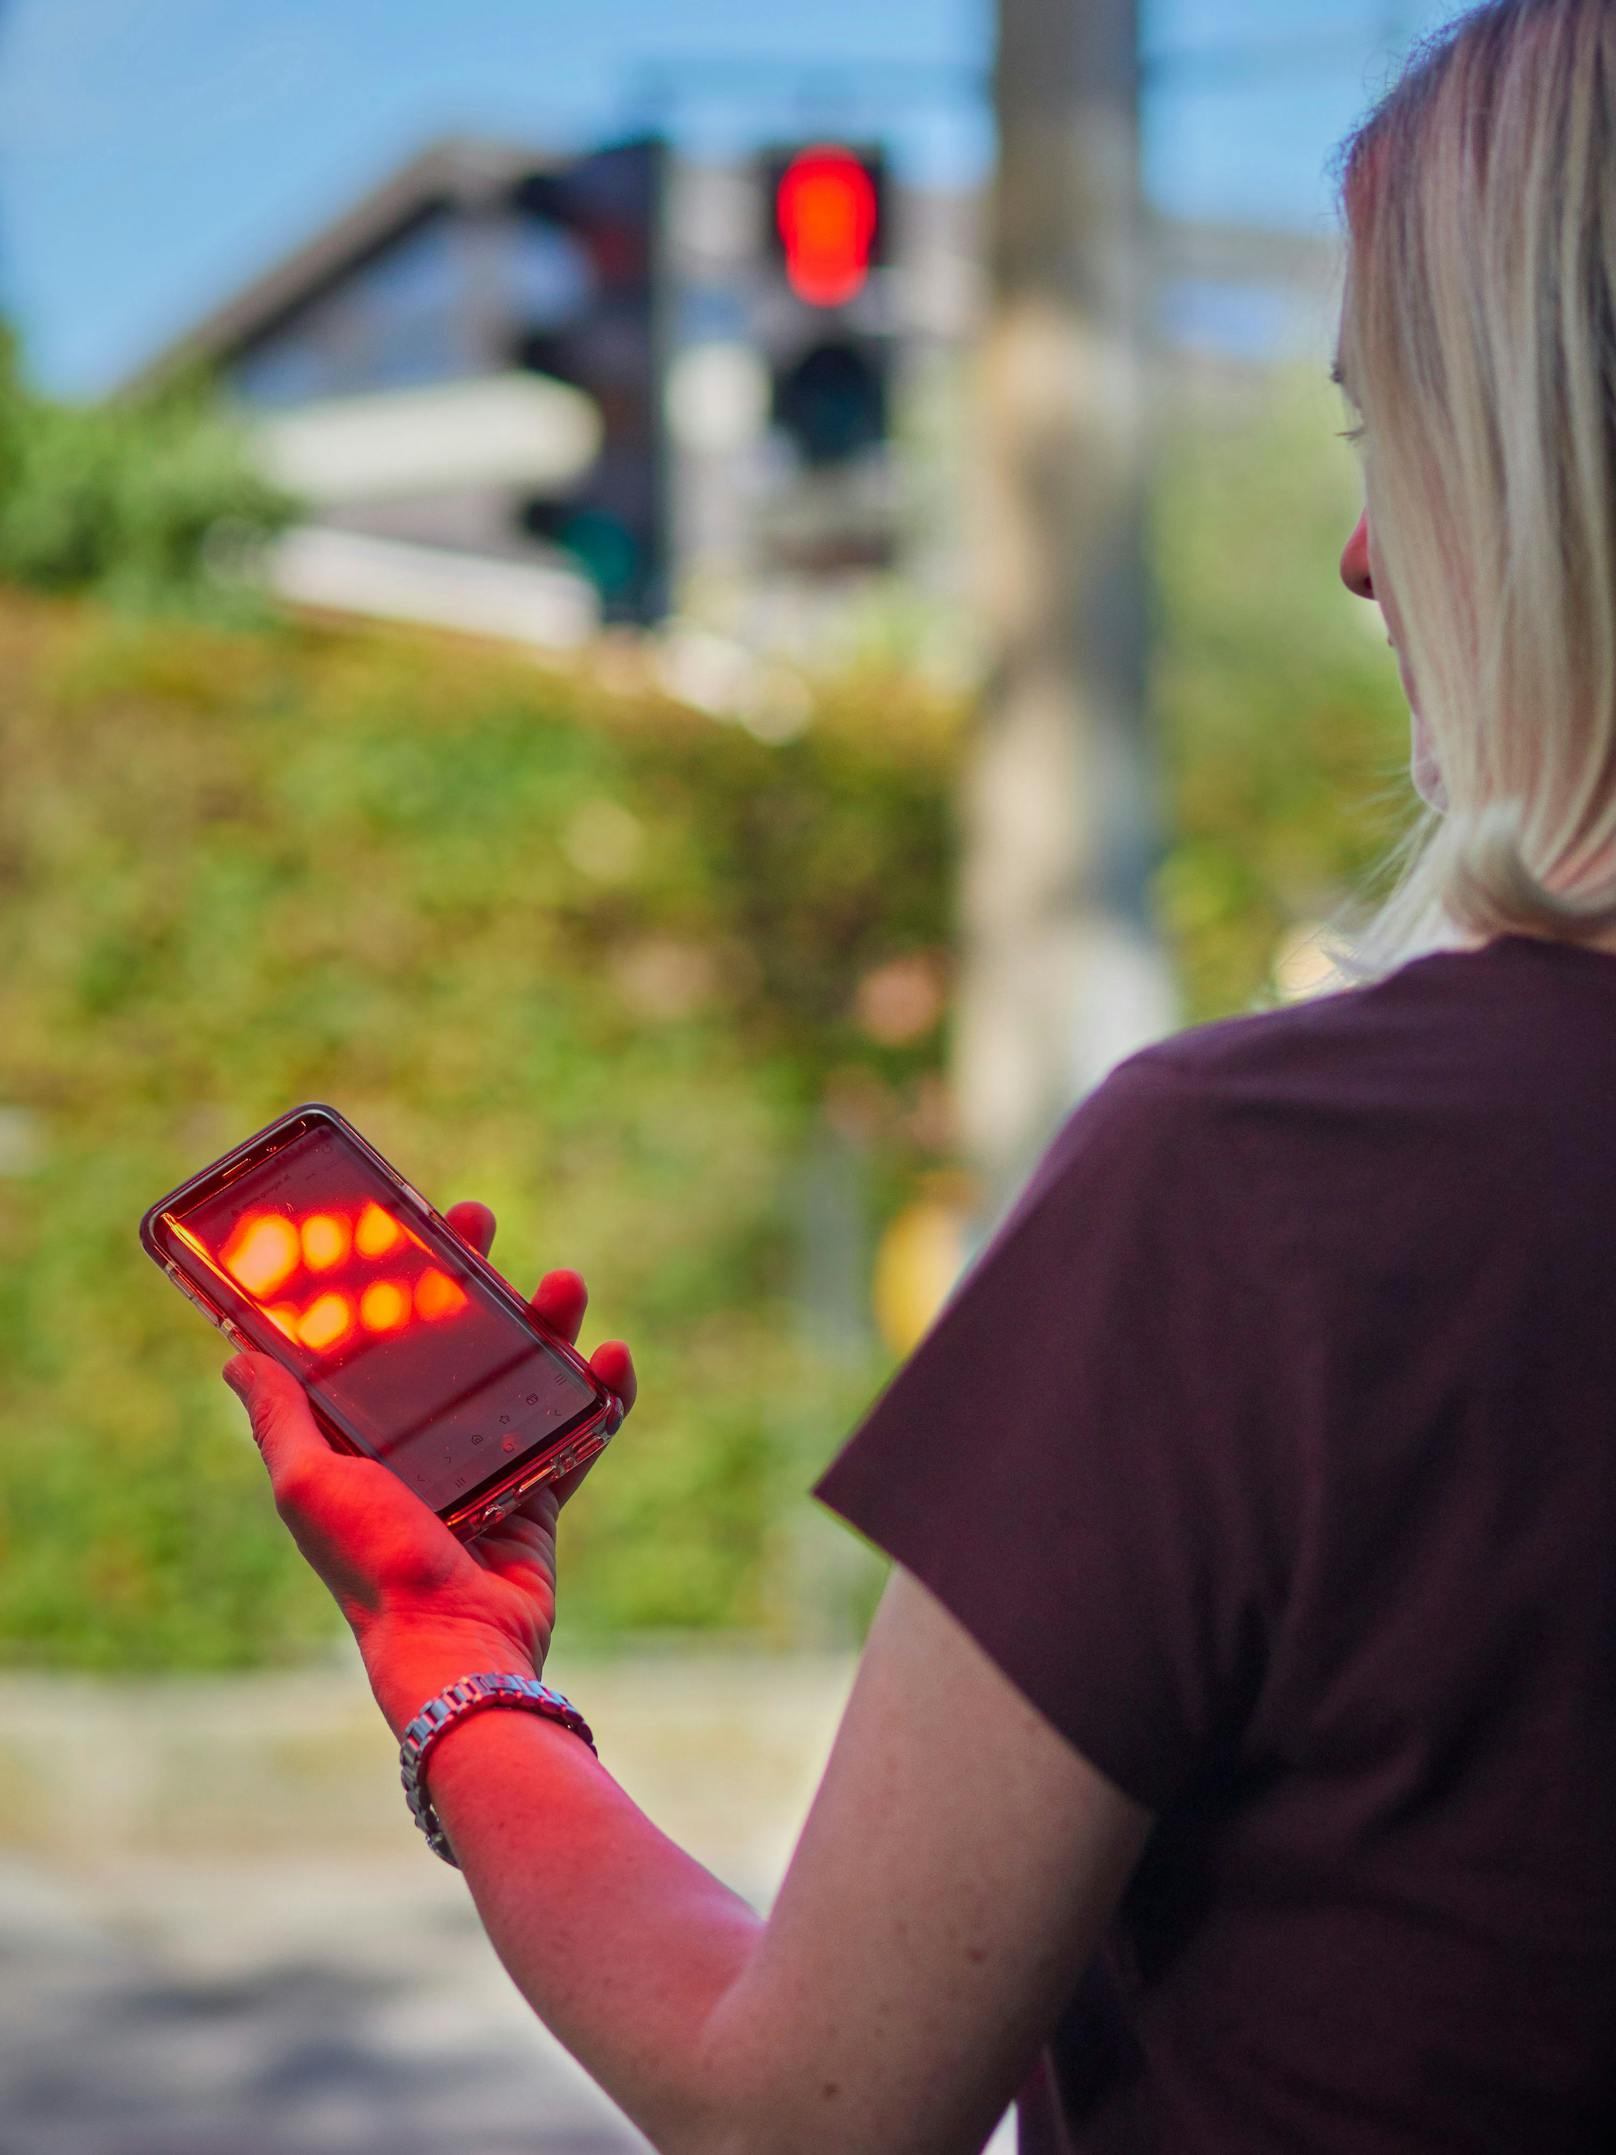 SafeLight hilft Handy-Usern beim sicheren Überqueren der Straße.